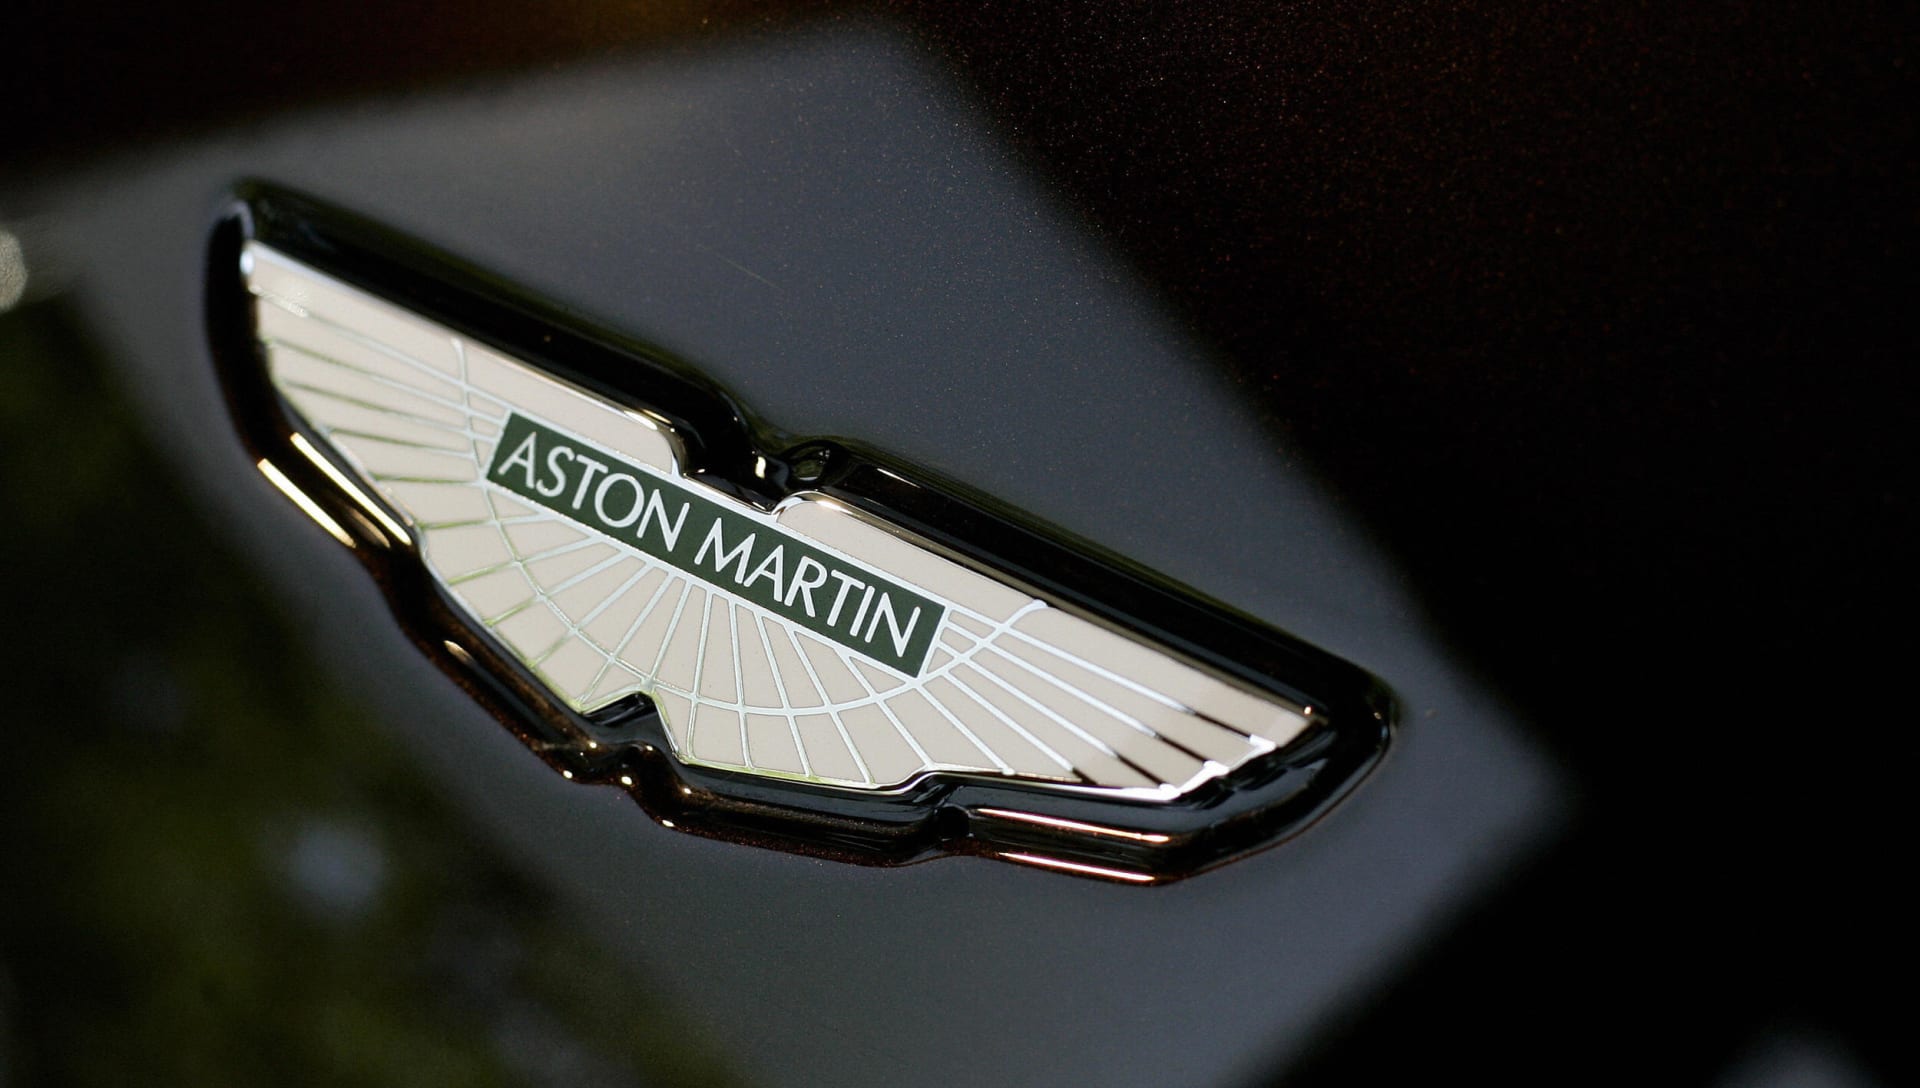  "أستون مارتن" سيارة "جيمس بوند" المفضلة تقترب من بورصة لندن